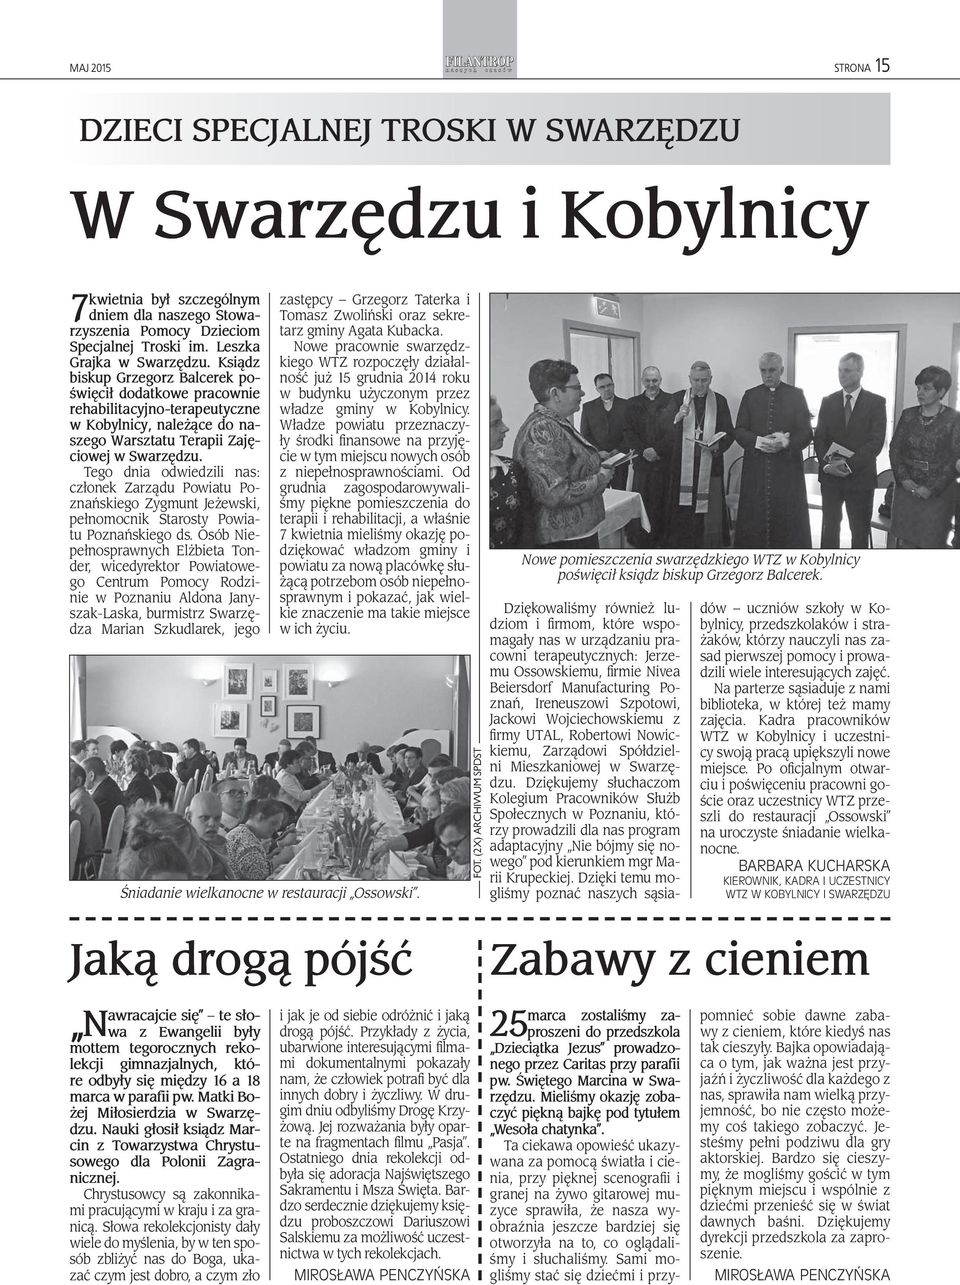 Tego dnia odwiedzili nas: członek Zarządu Powiatu Poznańskiego Zygmunt Jeżewski, pełnomocnik Starosty Powiatu Poznańskiego ds.